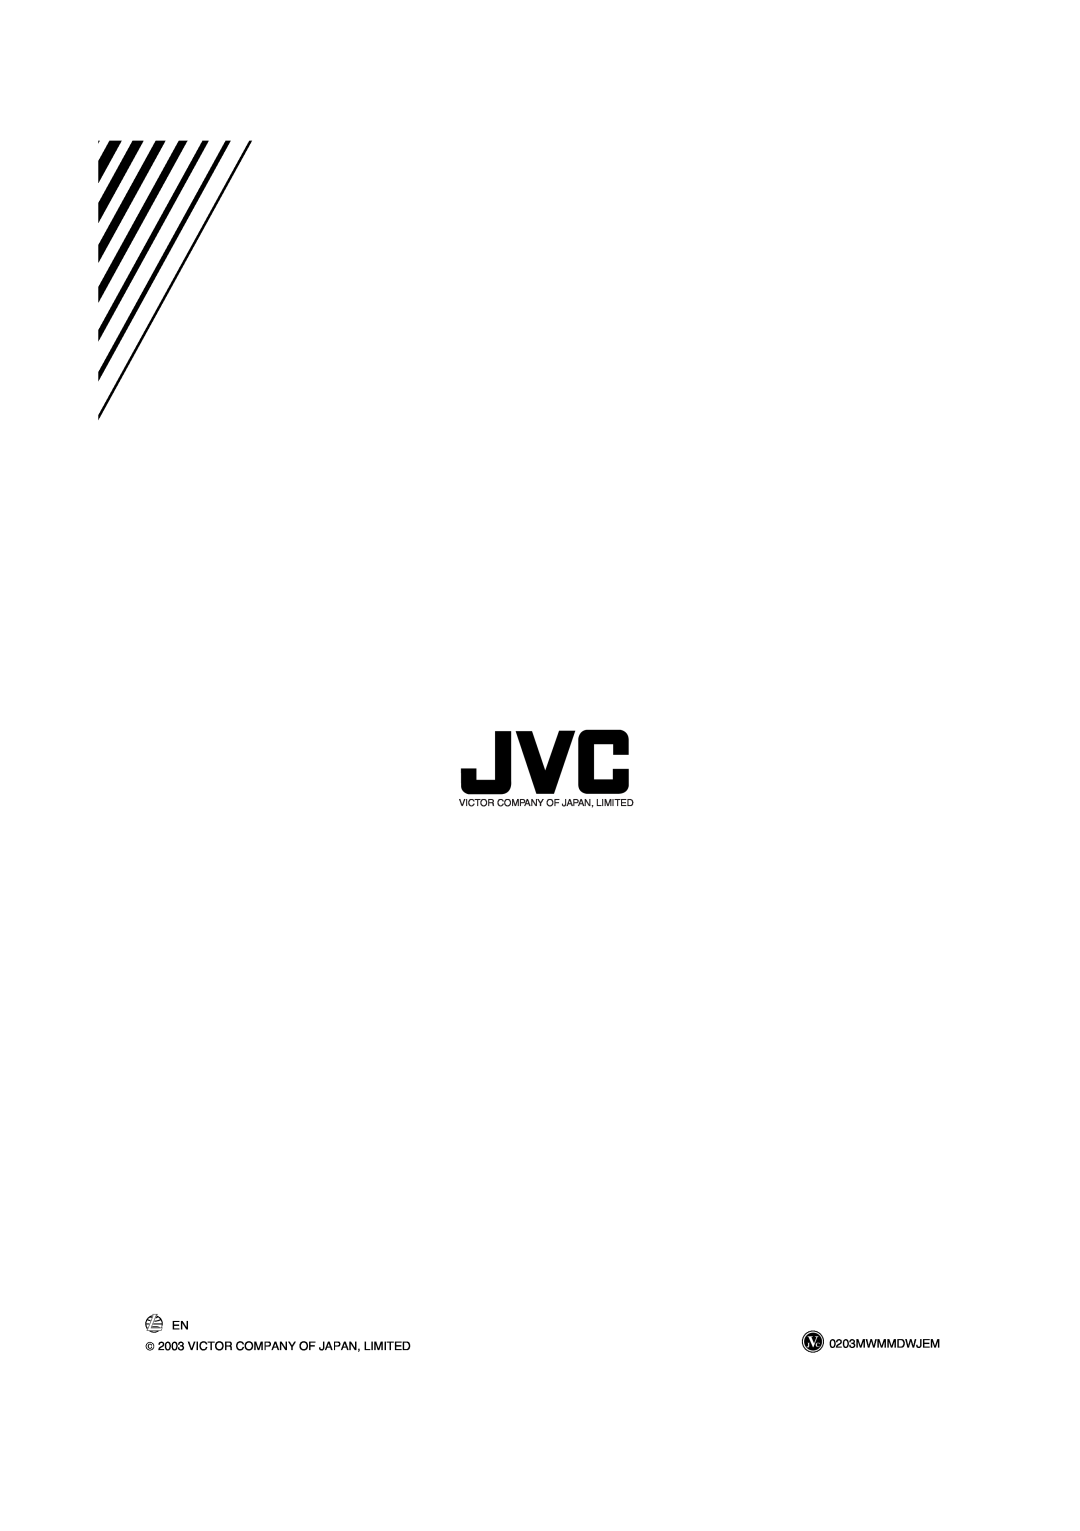 JVC HX-Z30 manual  2003 VICTOR COMPANY OF JAPAN, LIMITED, 0203MWMMDWJEM, Victor Company Of Japan, Limited 